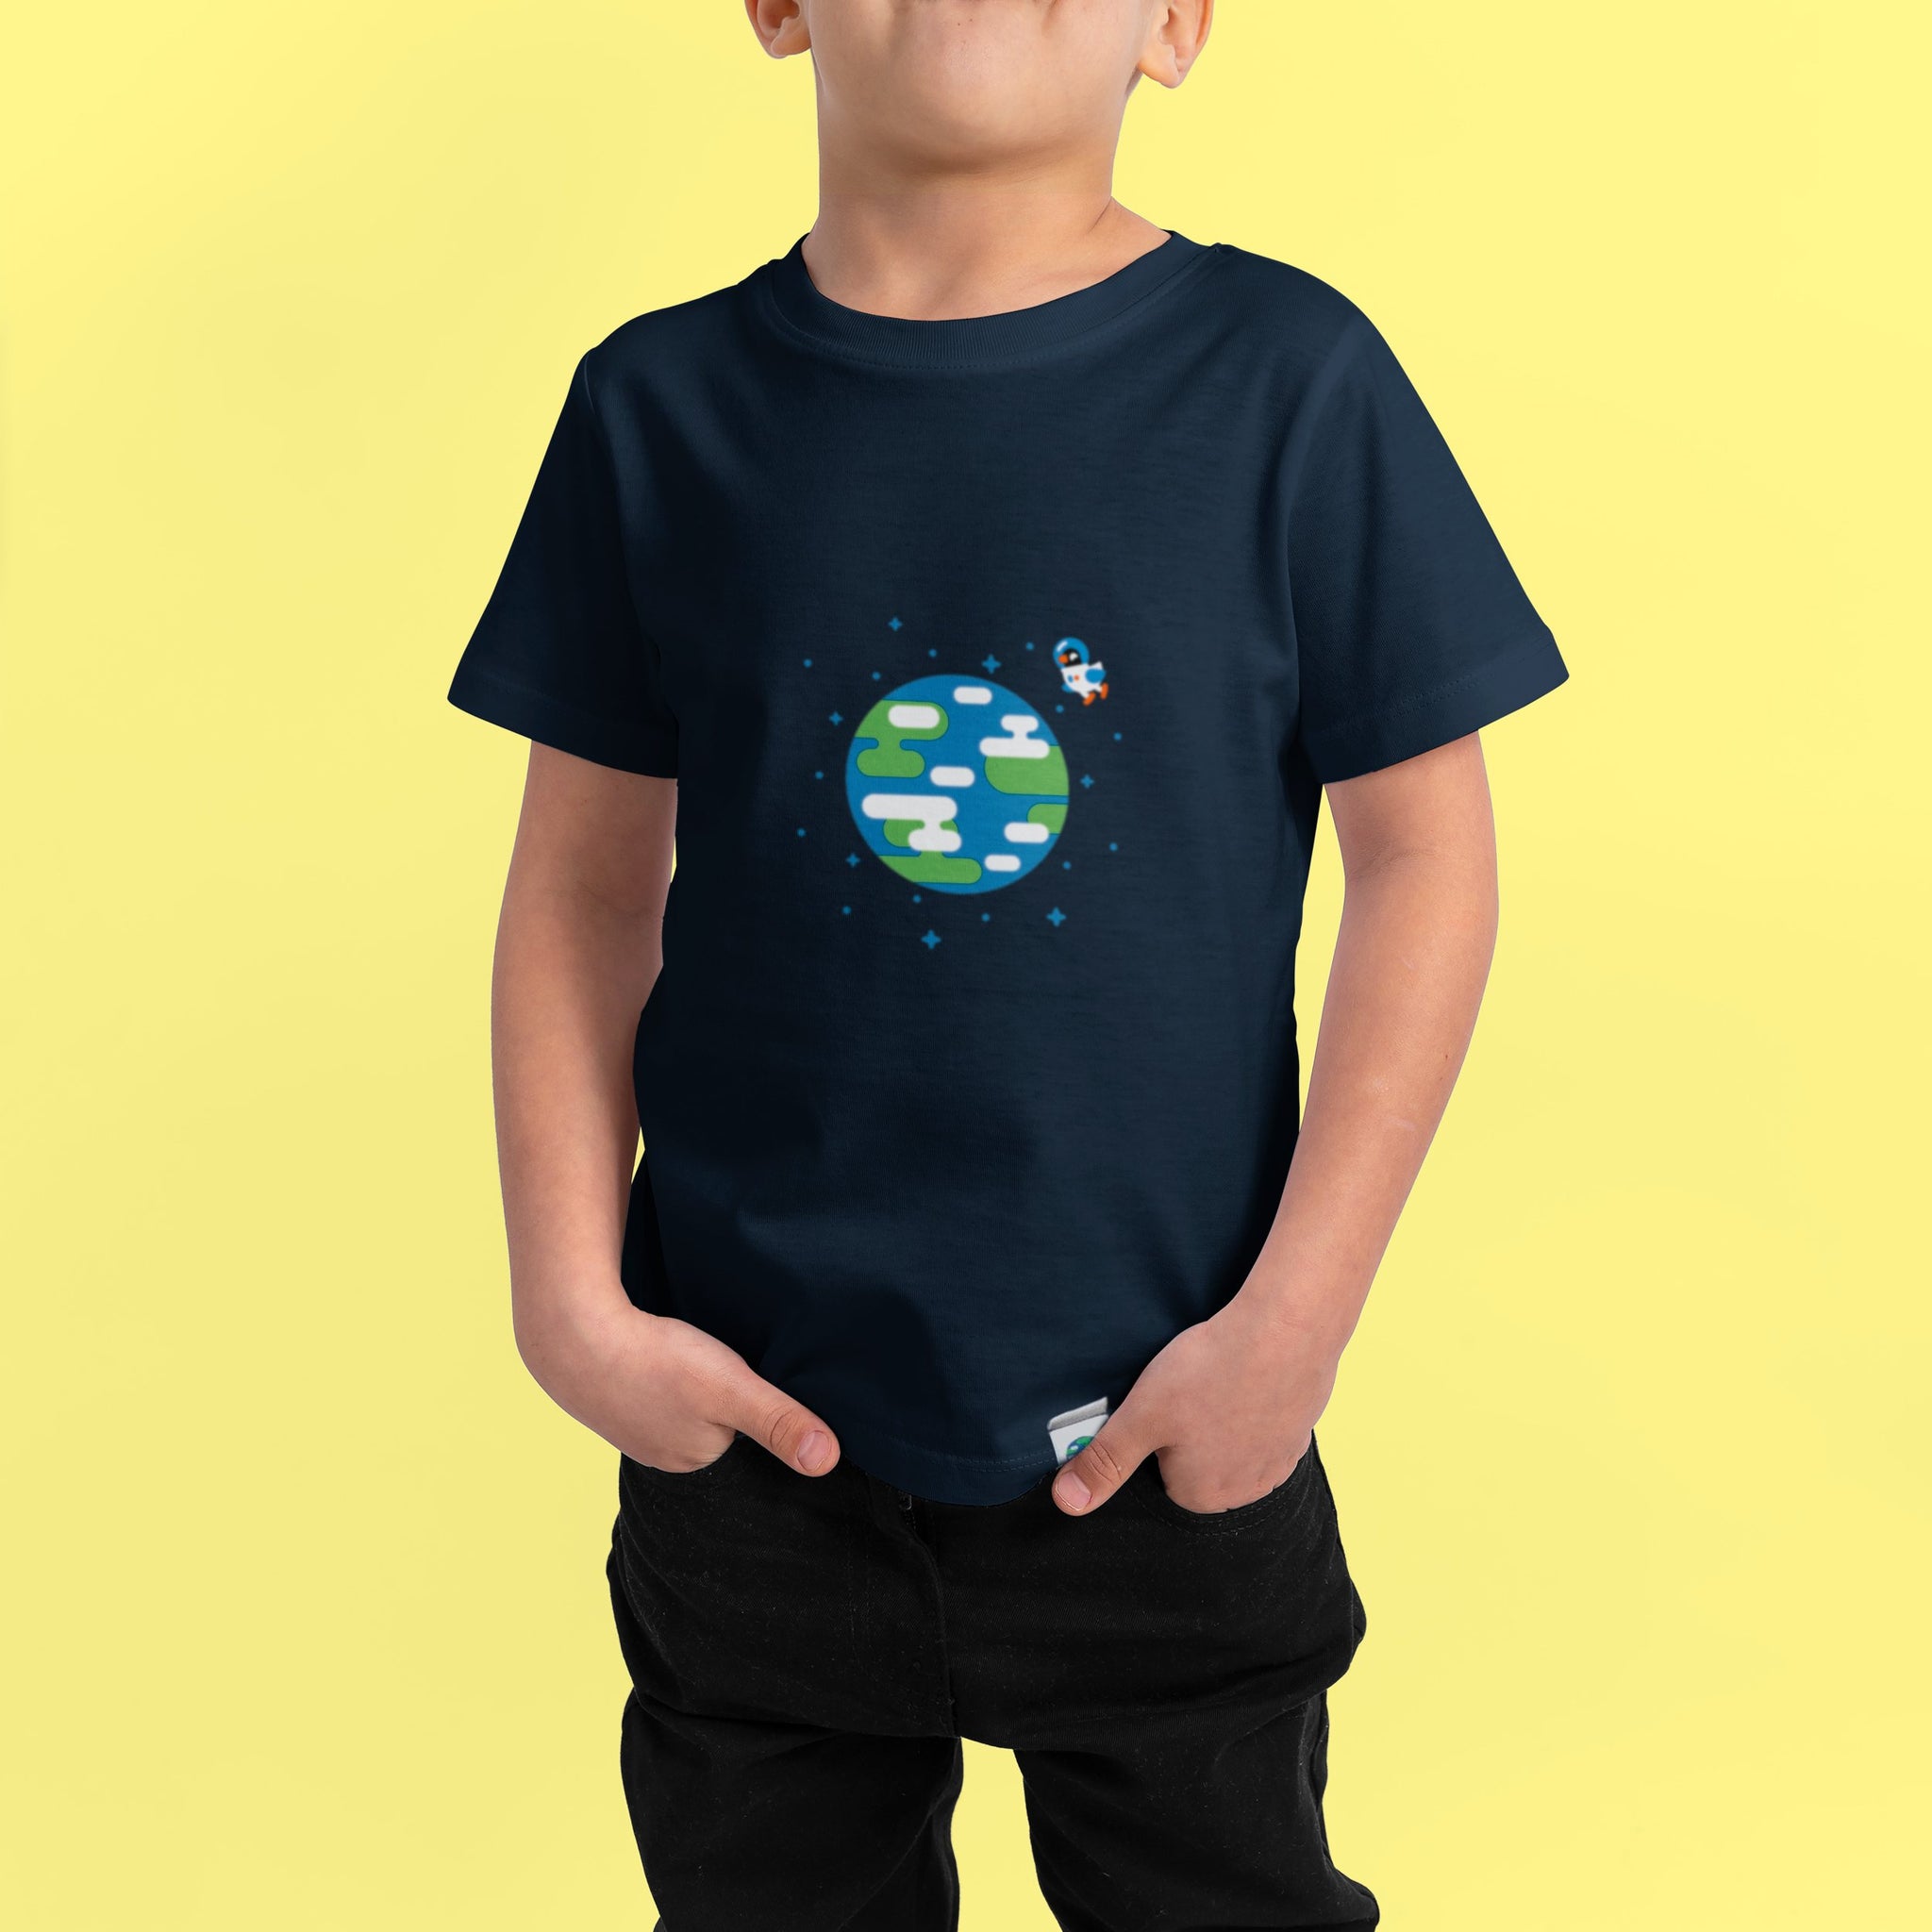 Earth T-Shirt Kids – – kurzgesagt the Official Merch shop